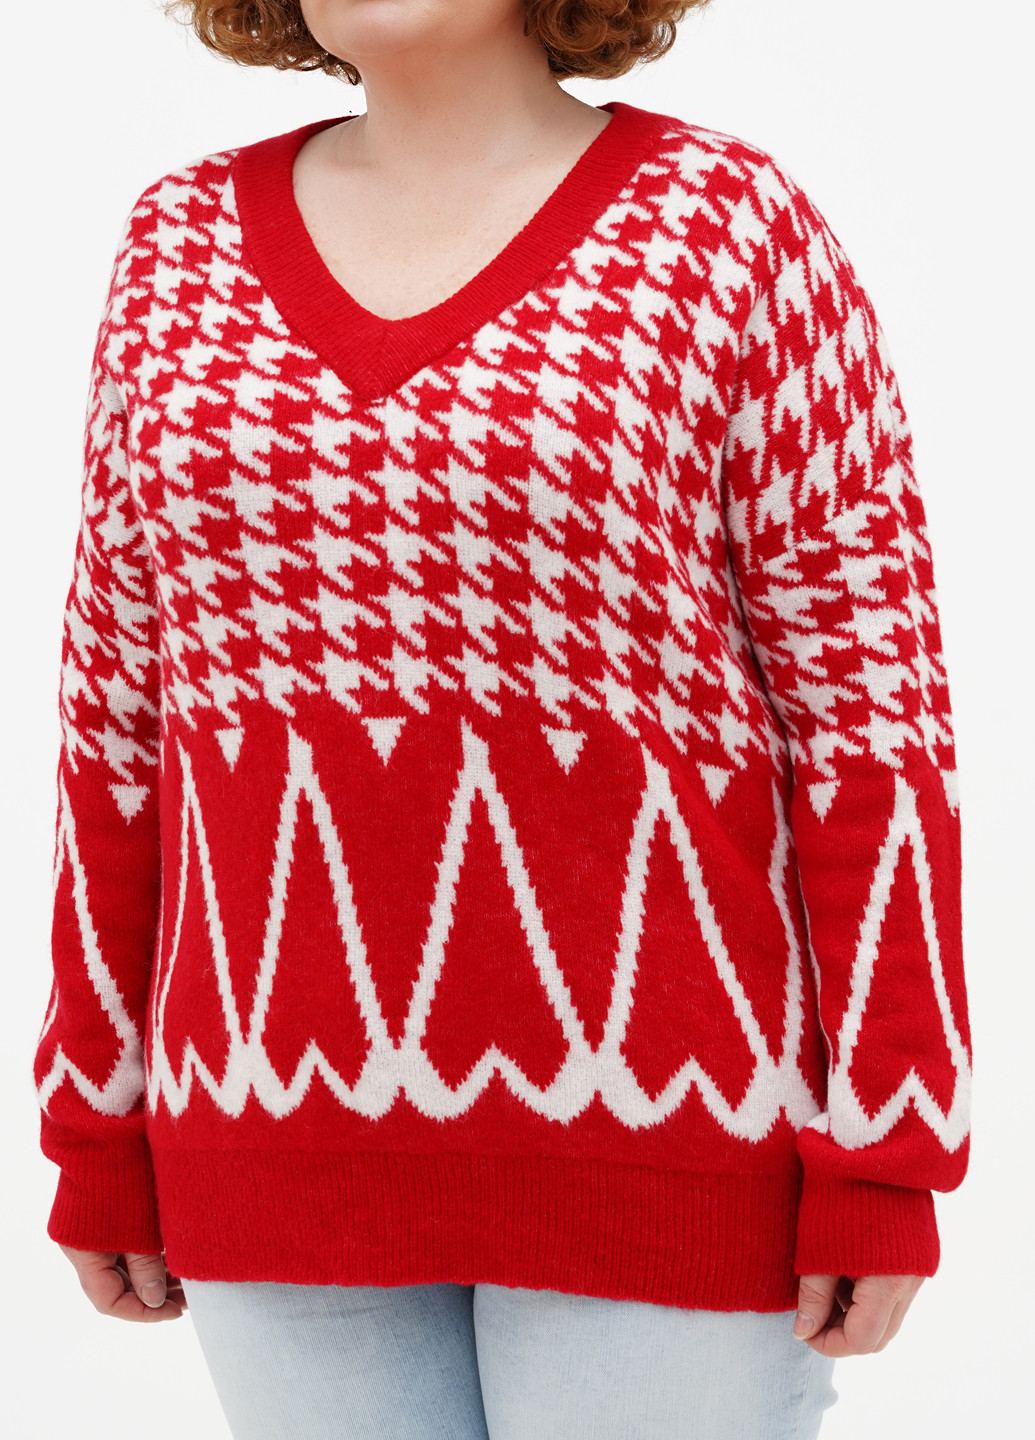 Красный демисезонный пуловер пуловер Comma